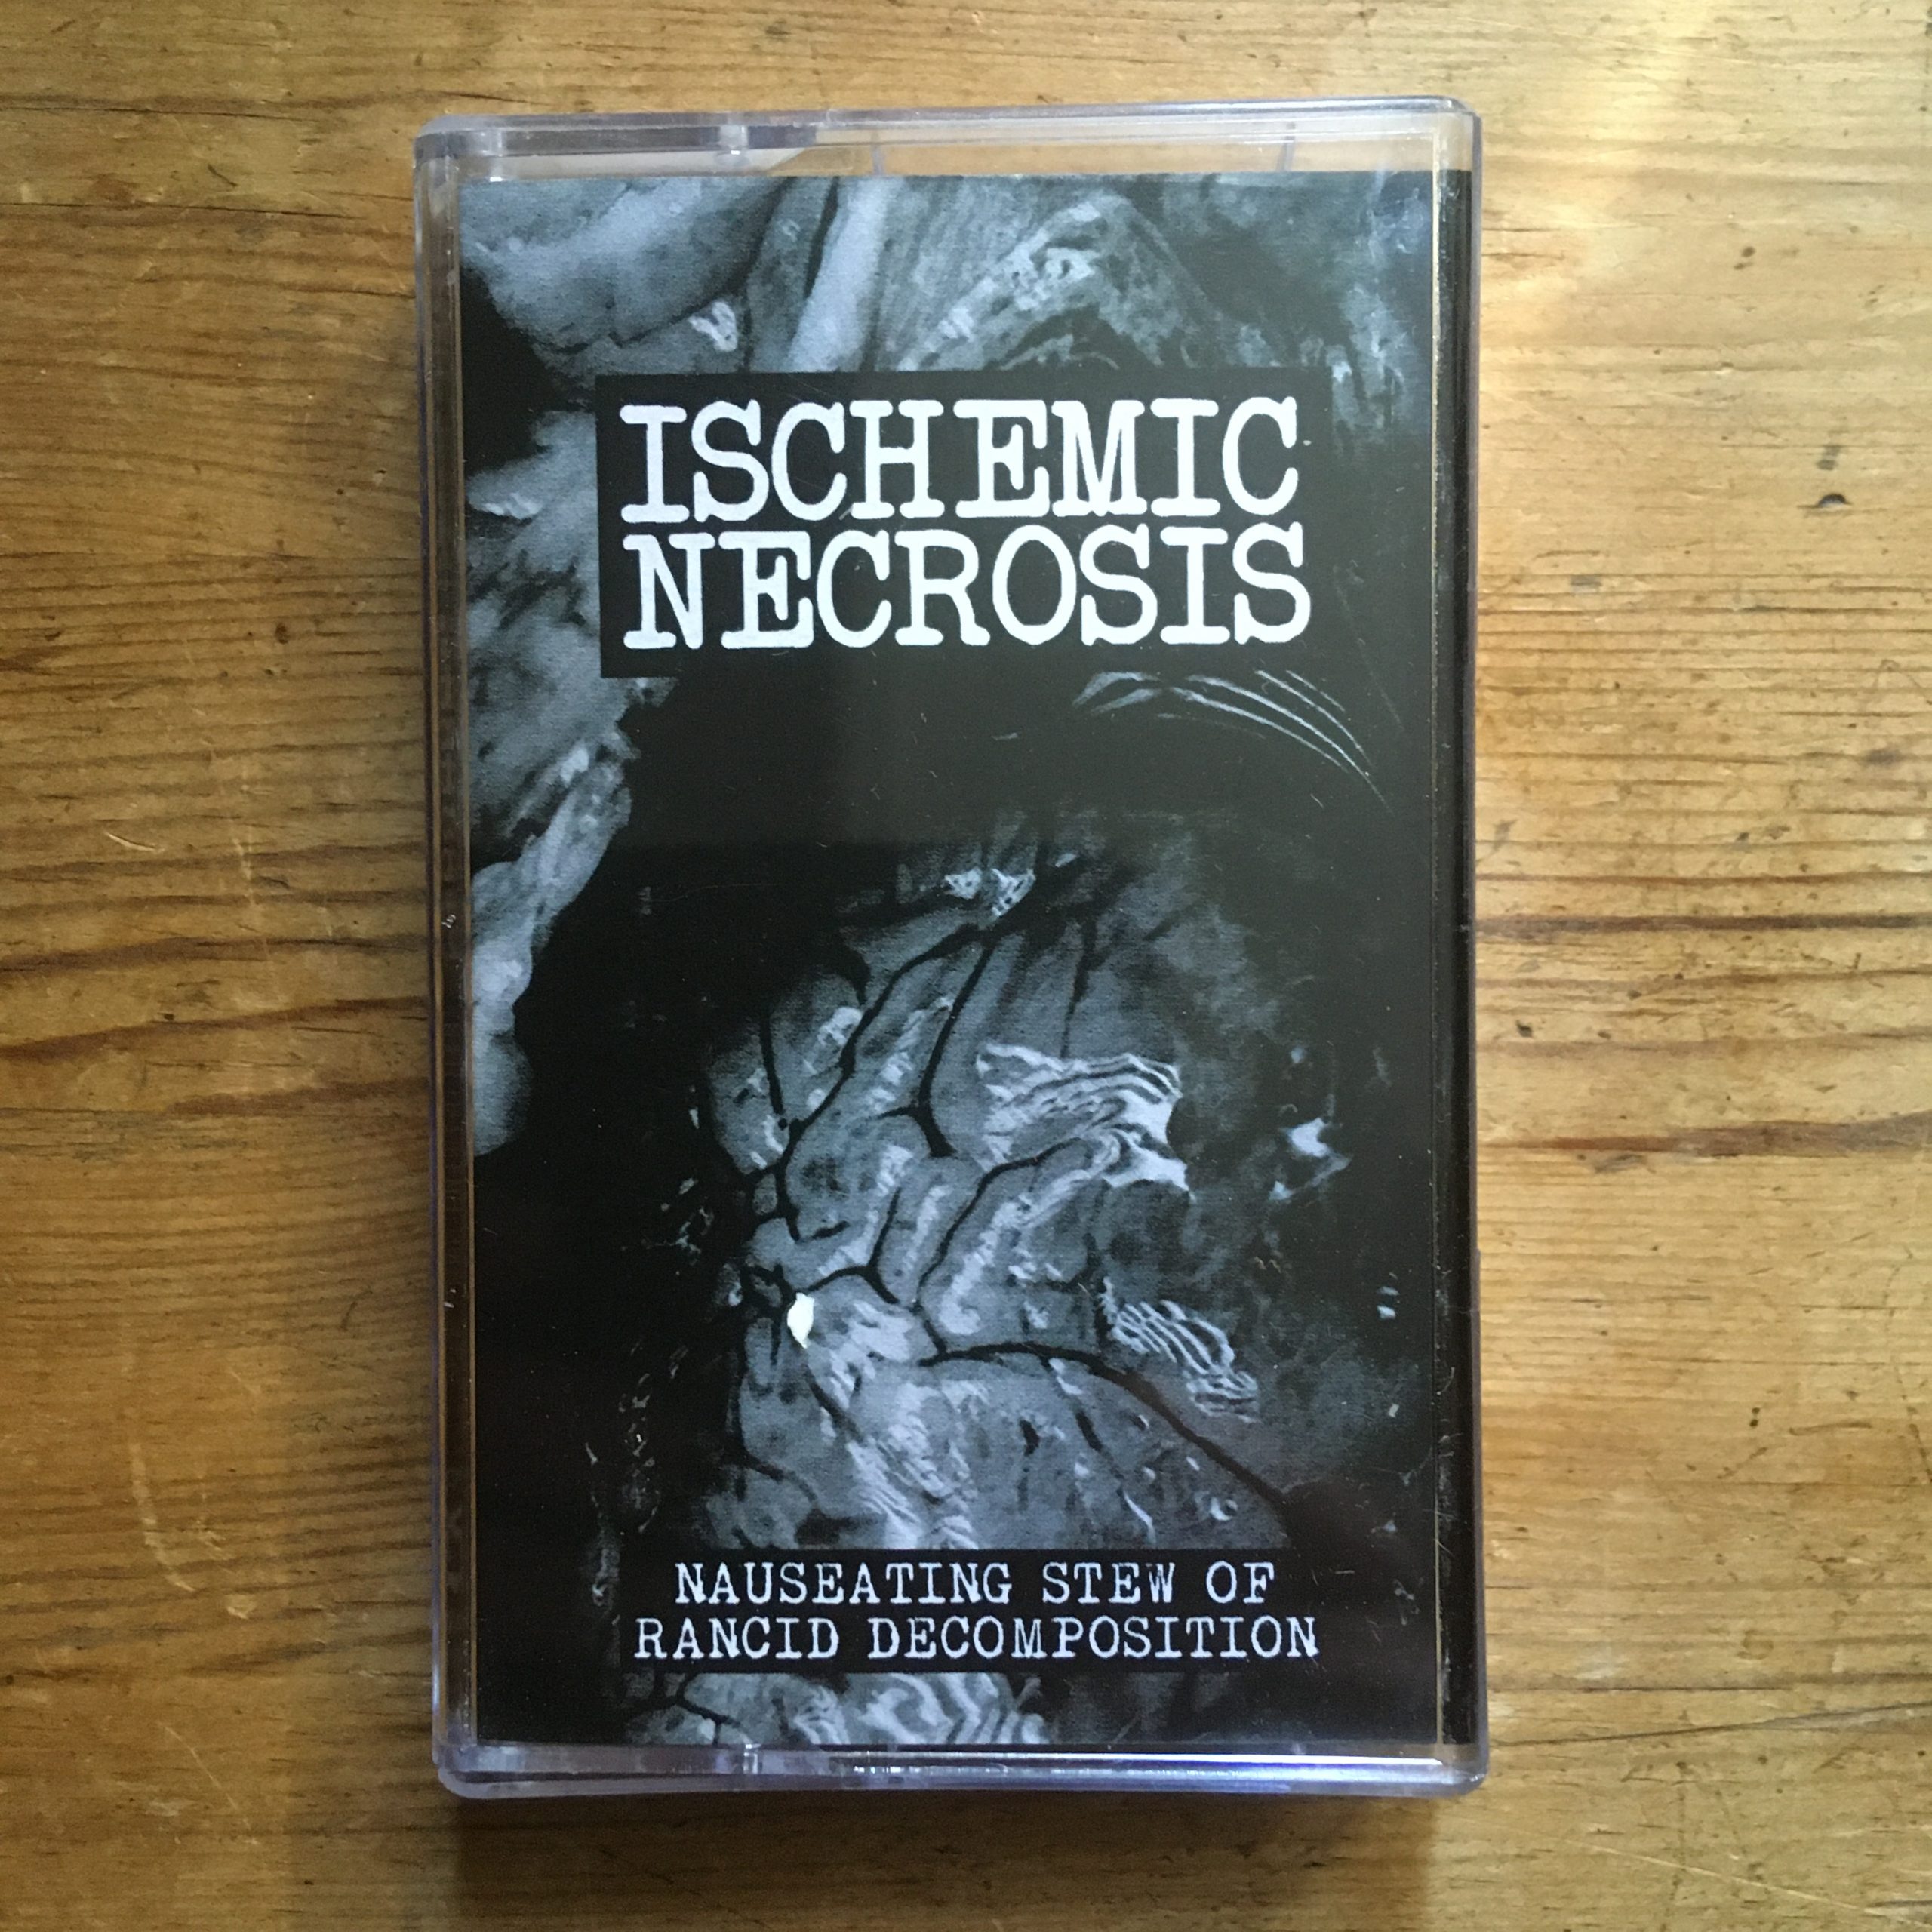 Photo of the Ischemic Necrosis - 